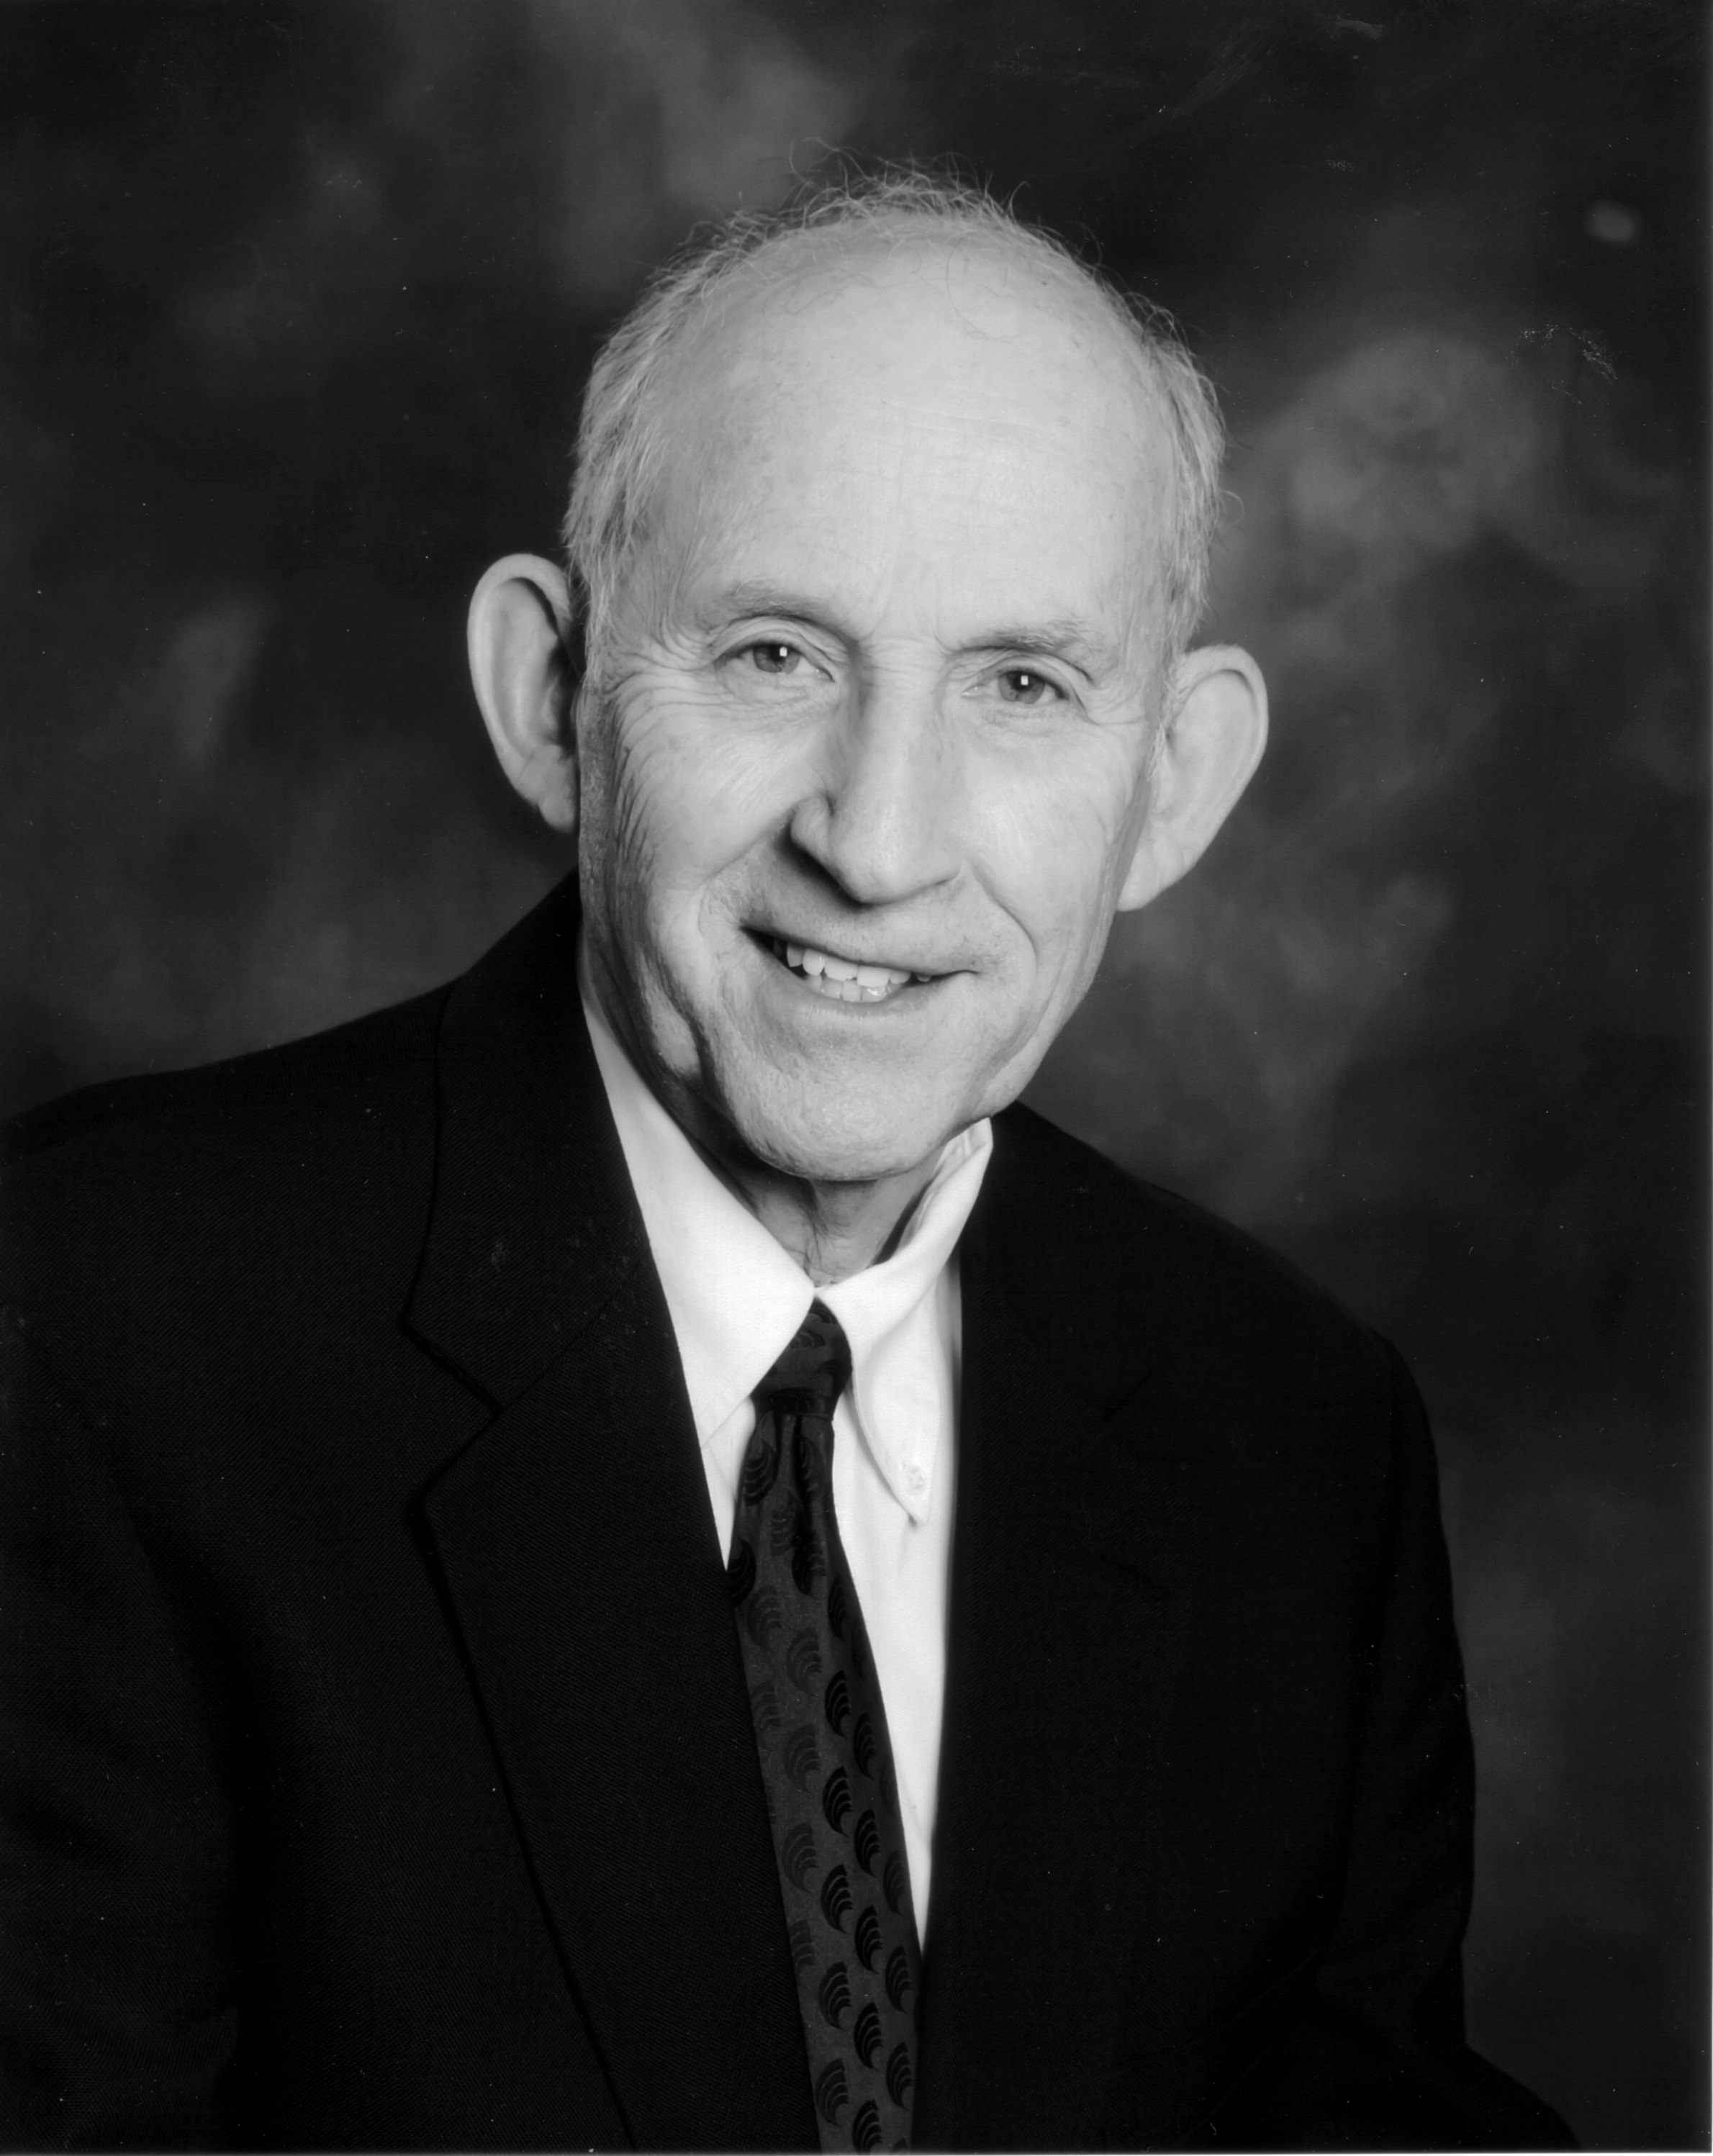 Dr. Terry Klopfenstein